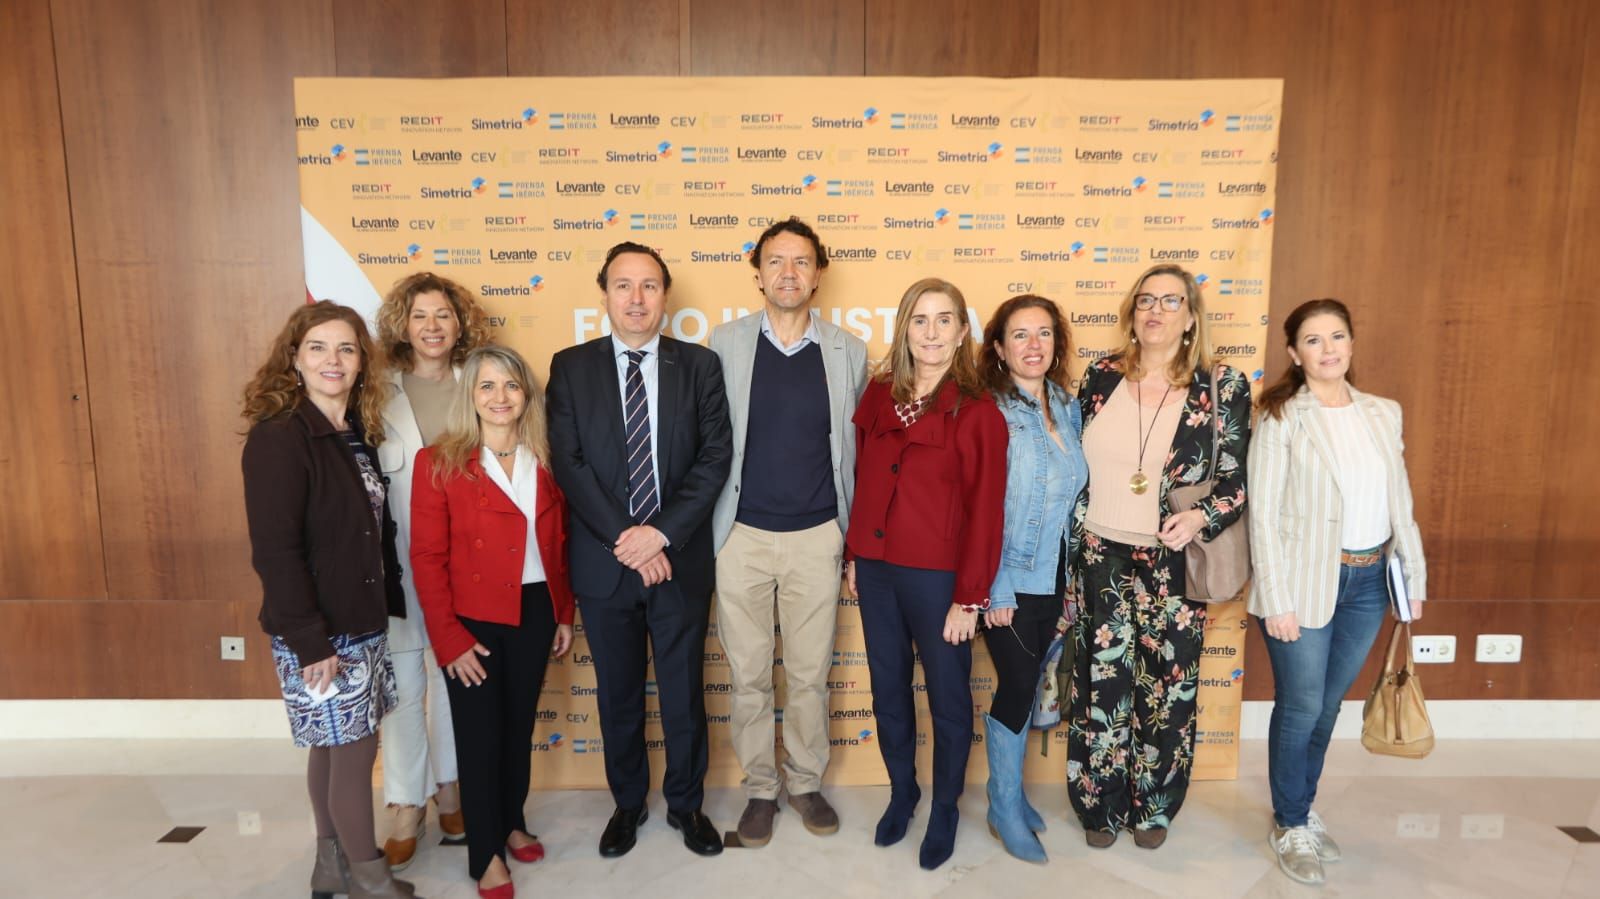 Los retos de la industria y la logística en la Comunitat Valenciana a debate